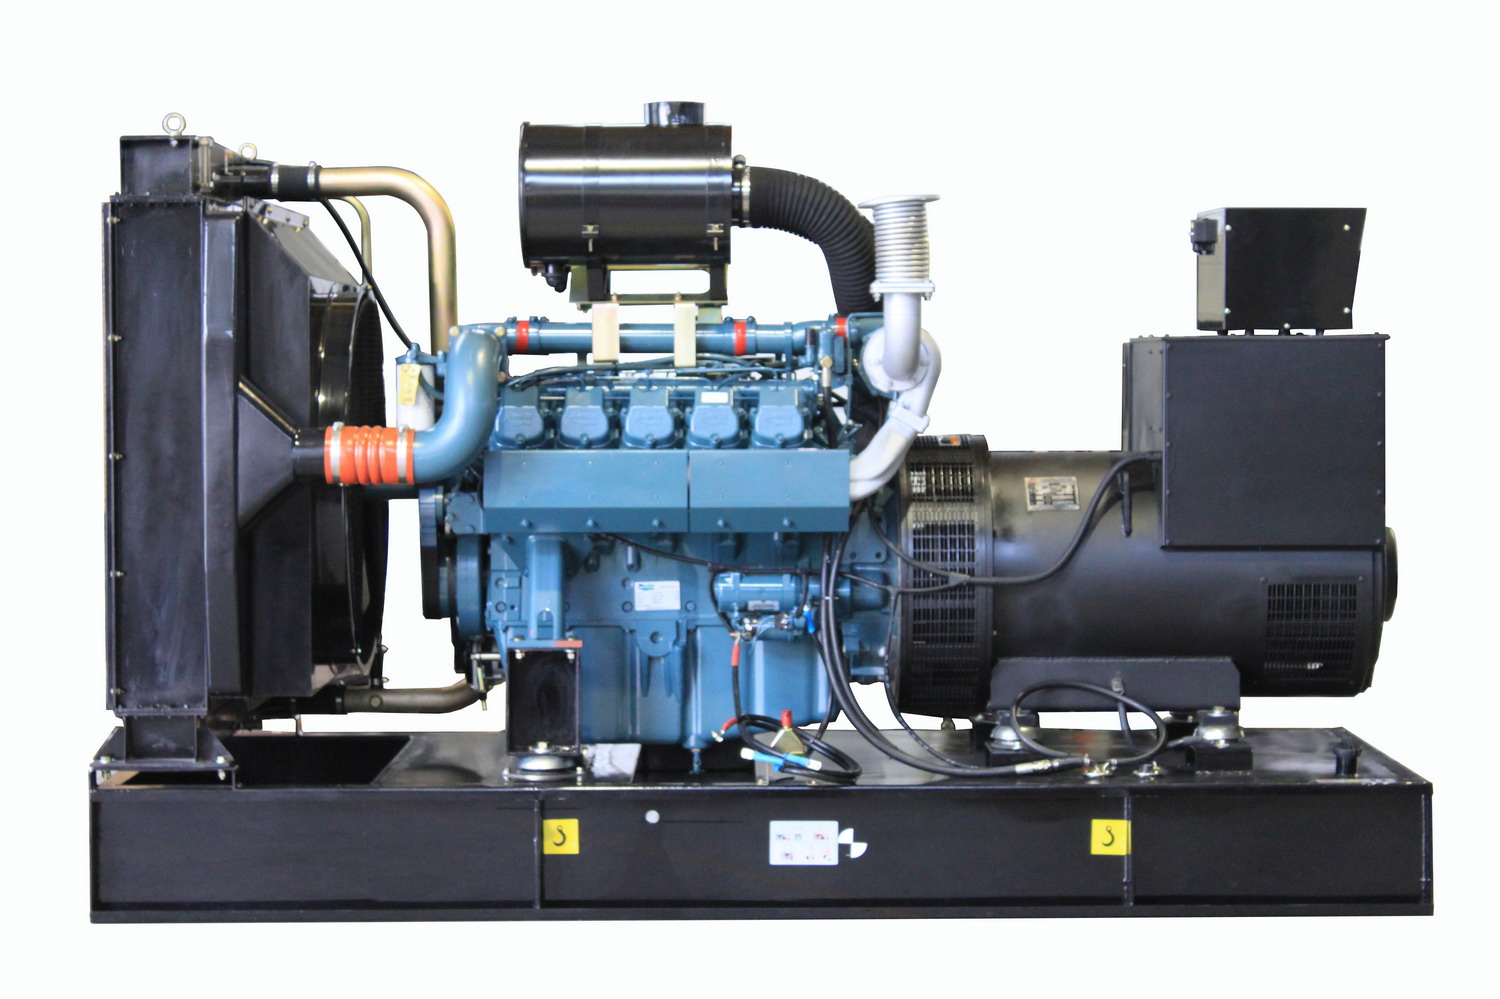 60HZ Doosan Diesel Generator